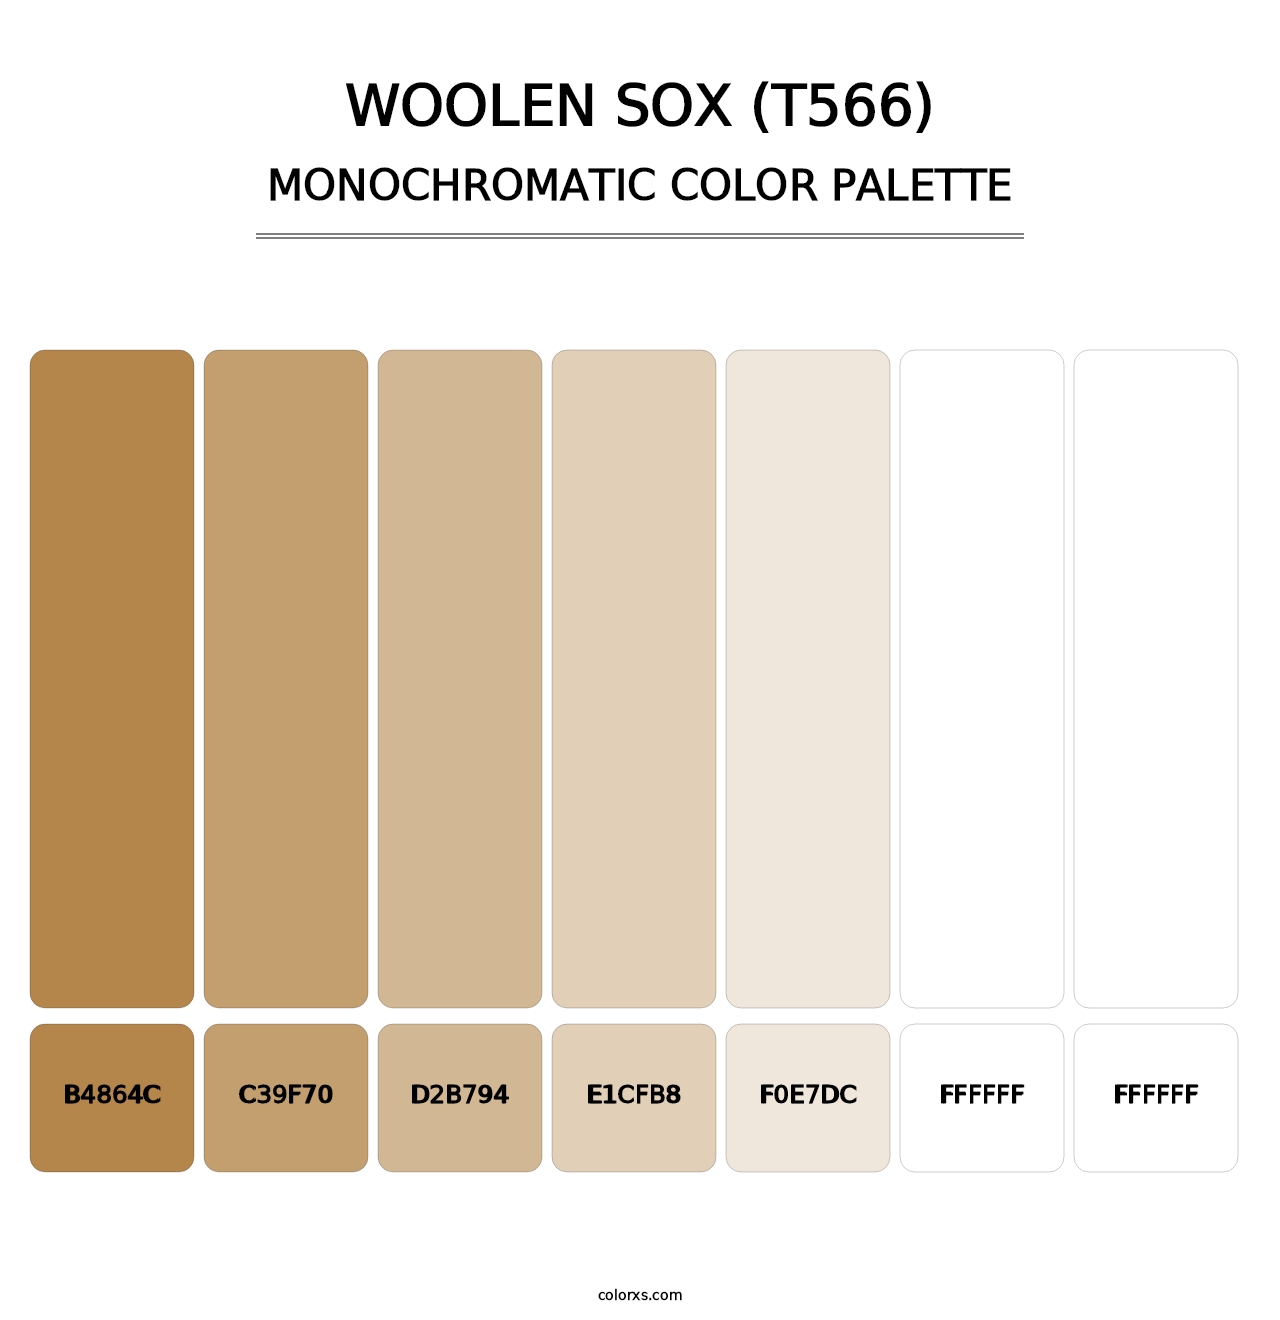 Woolen Sox (T566) - Monochromatic Color Palette